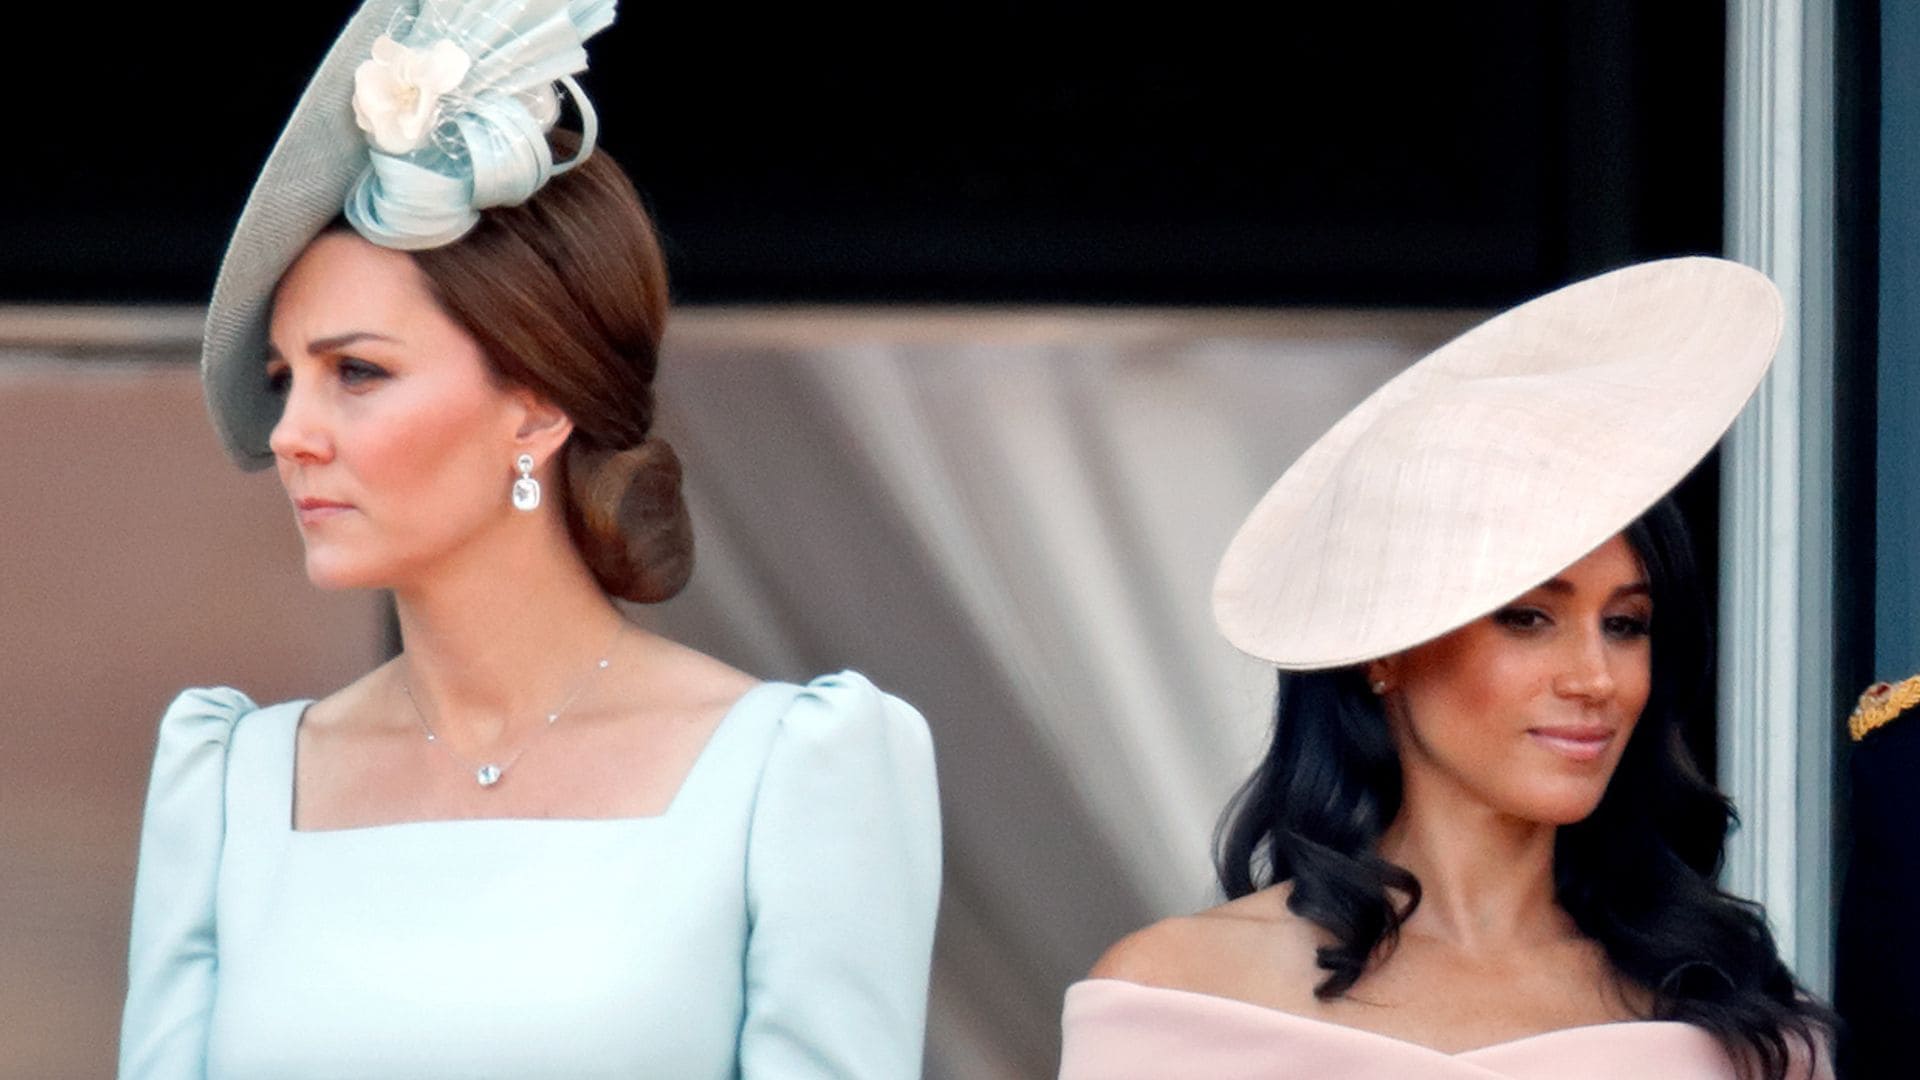 Lo que pasó segundos antes de esta comentada imagen de Meghan Markle y Kate Middleton en el balcón de Buckingham